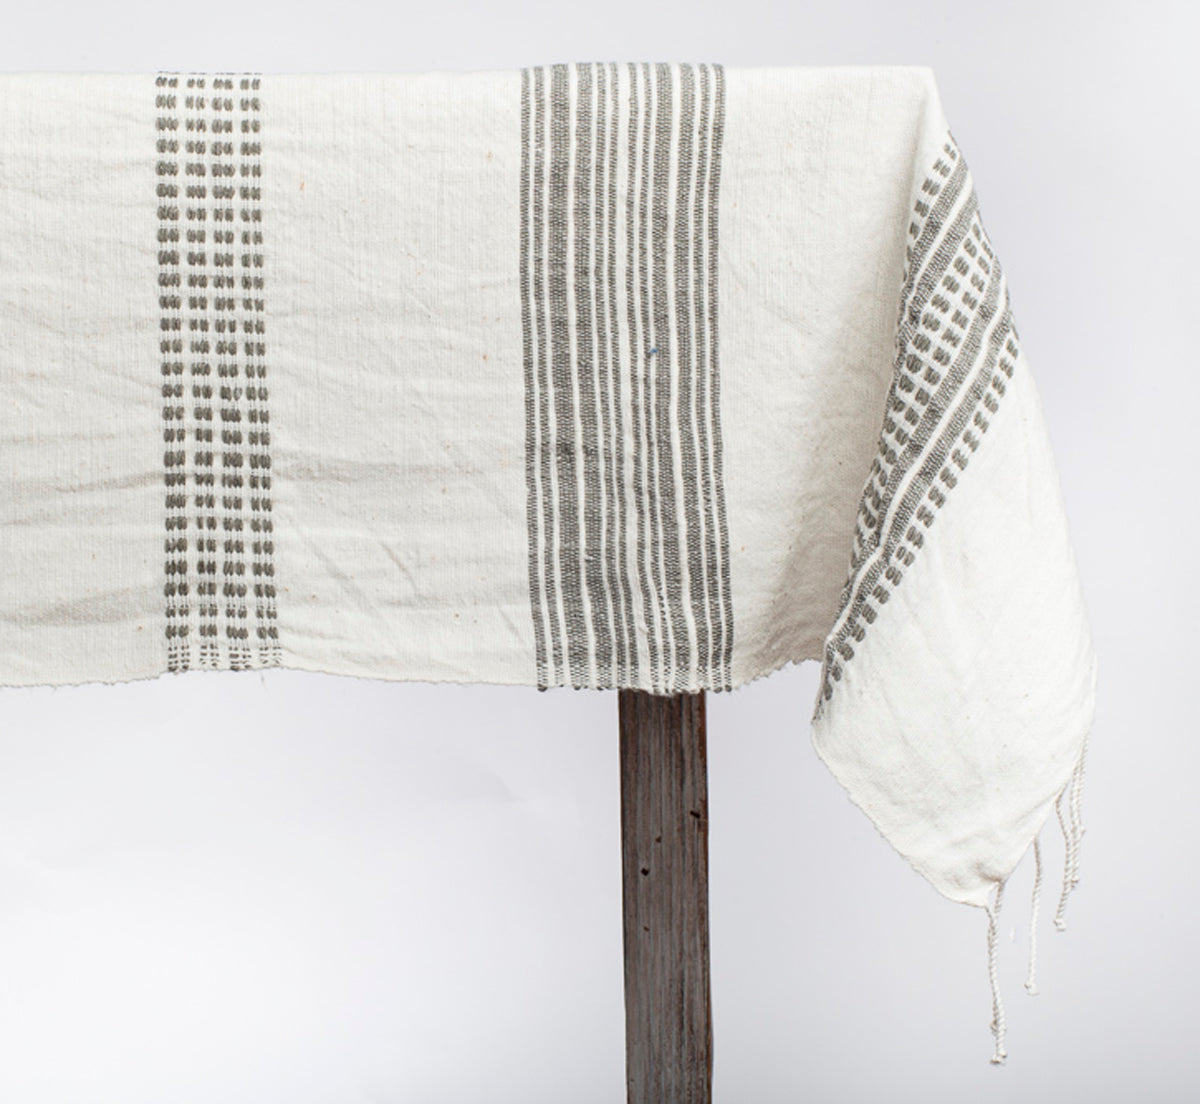 Aden Cotton Tablecloth 96x54